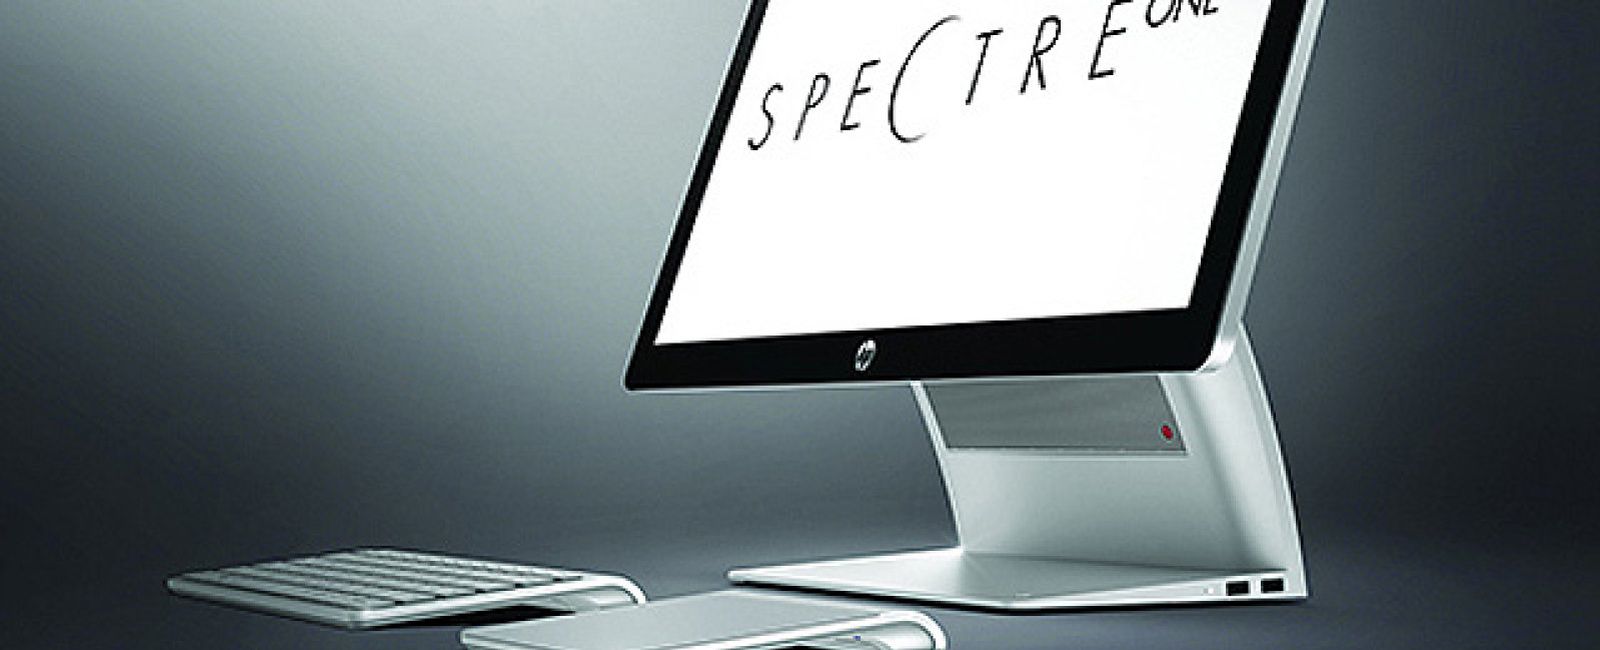 Foto: HP Spectre One, el PC "todo en uno" con Windows 8 que busca competir con el iMac